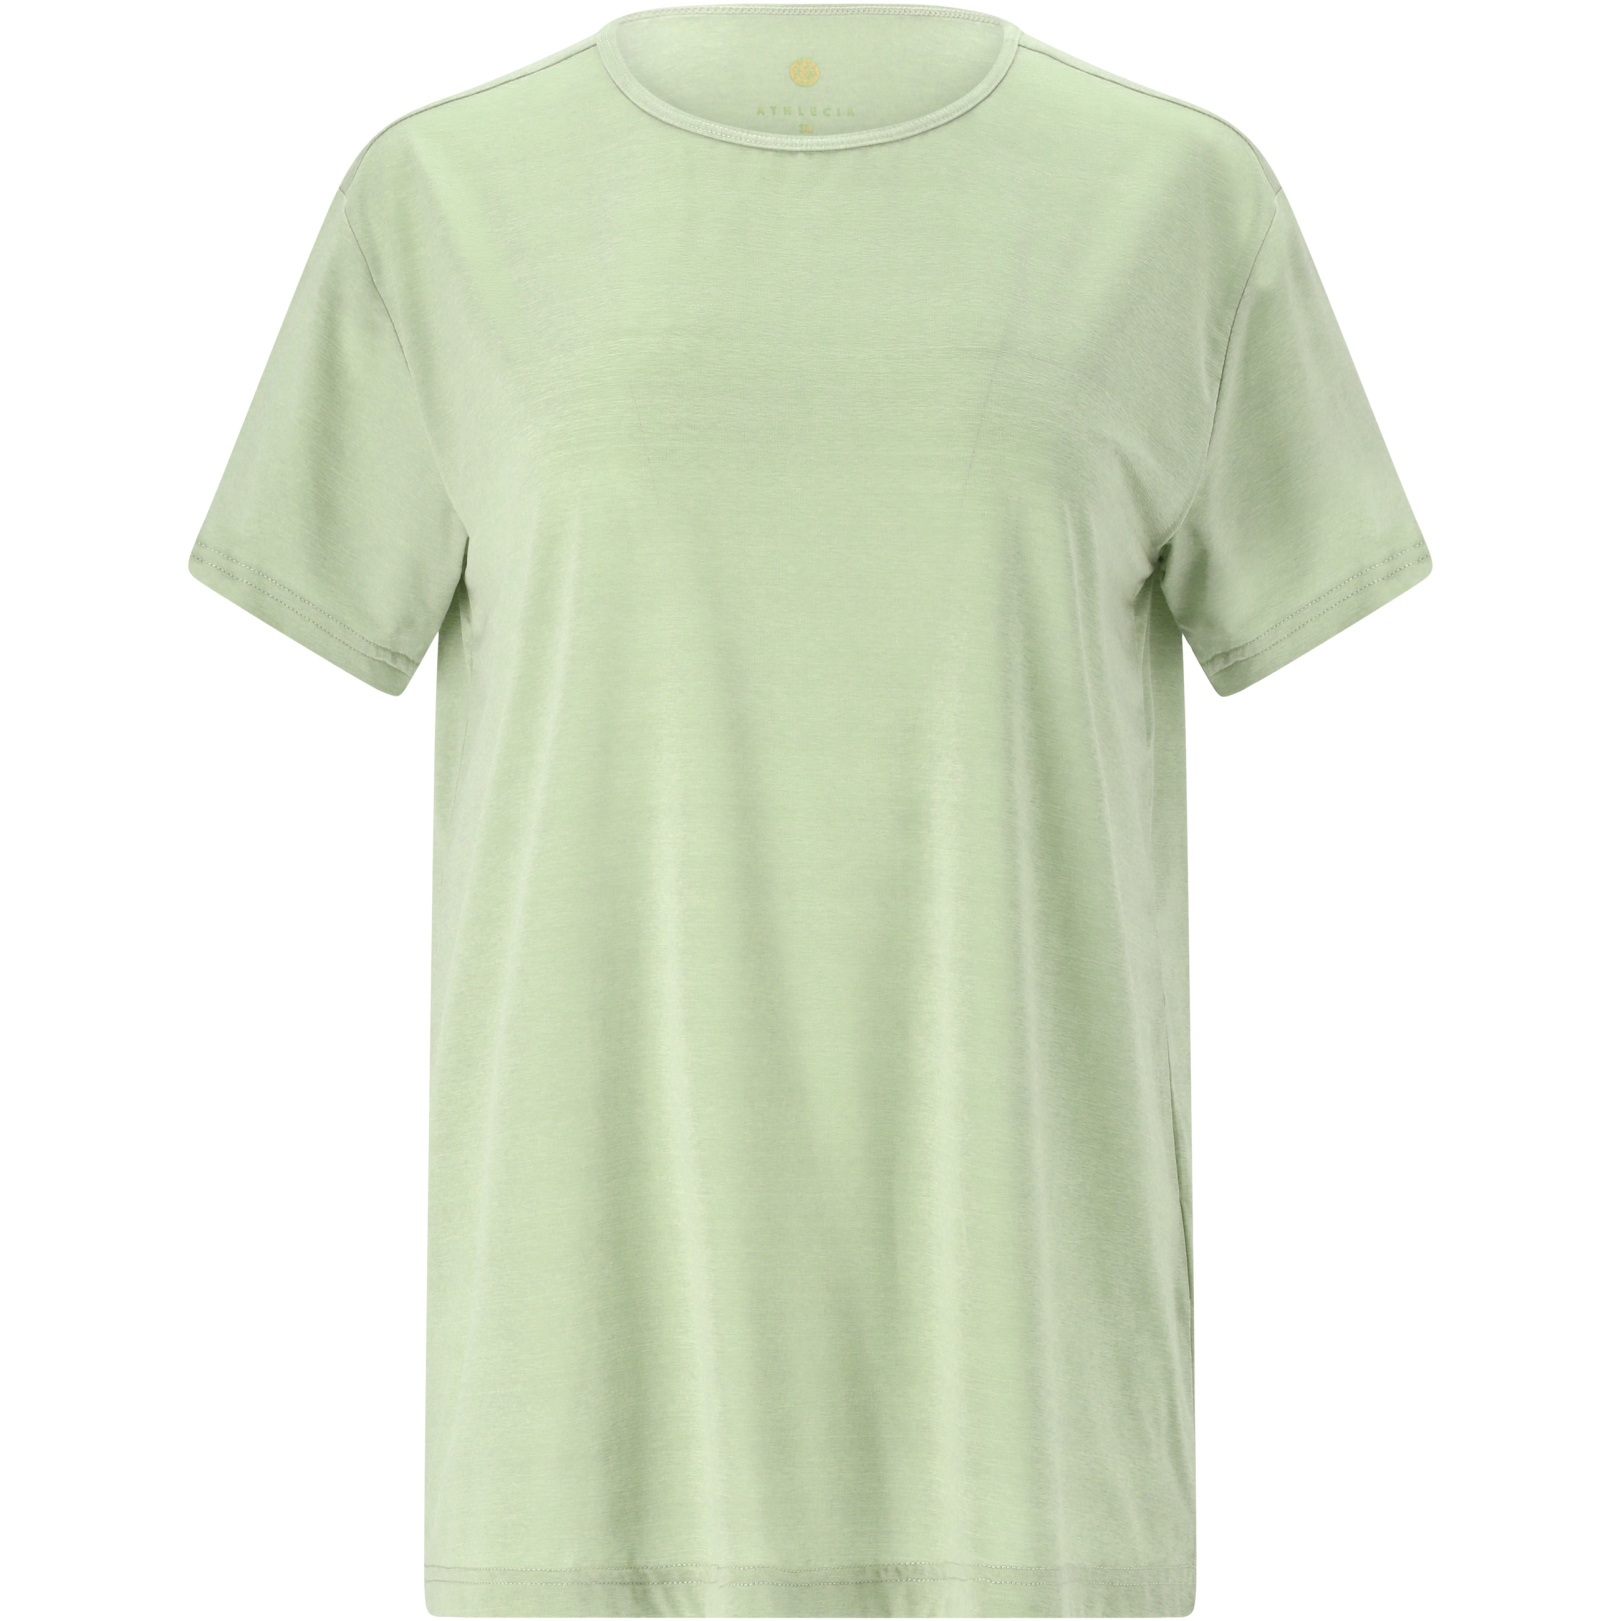 Produktbild von Athlecia Lizzy Slub T-Shirt Damen - Green Lily